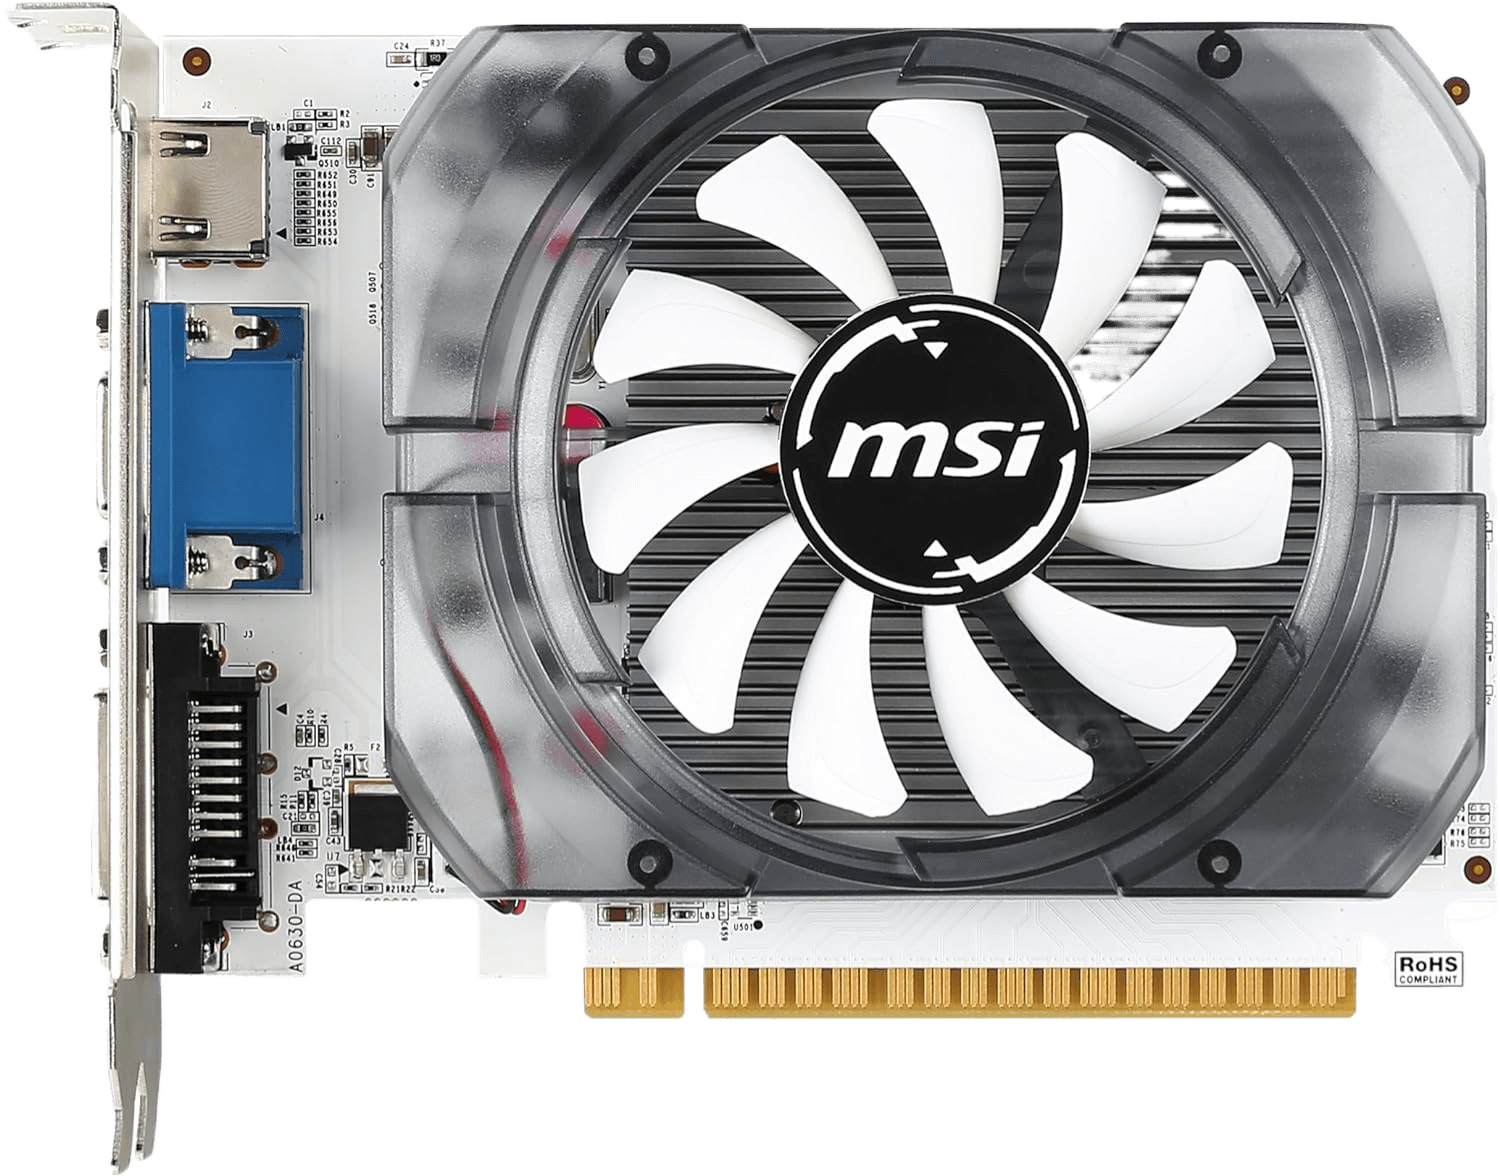 MSI GeForce GT 730 Fermi 2GB DDR3 128-bit DirectX 12 Video Card N730-2GD3V3